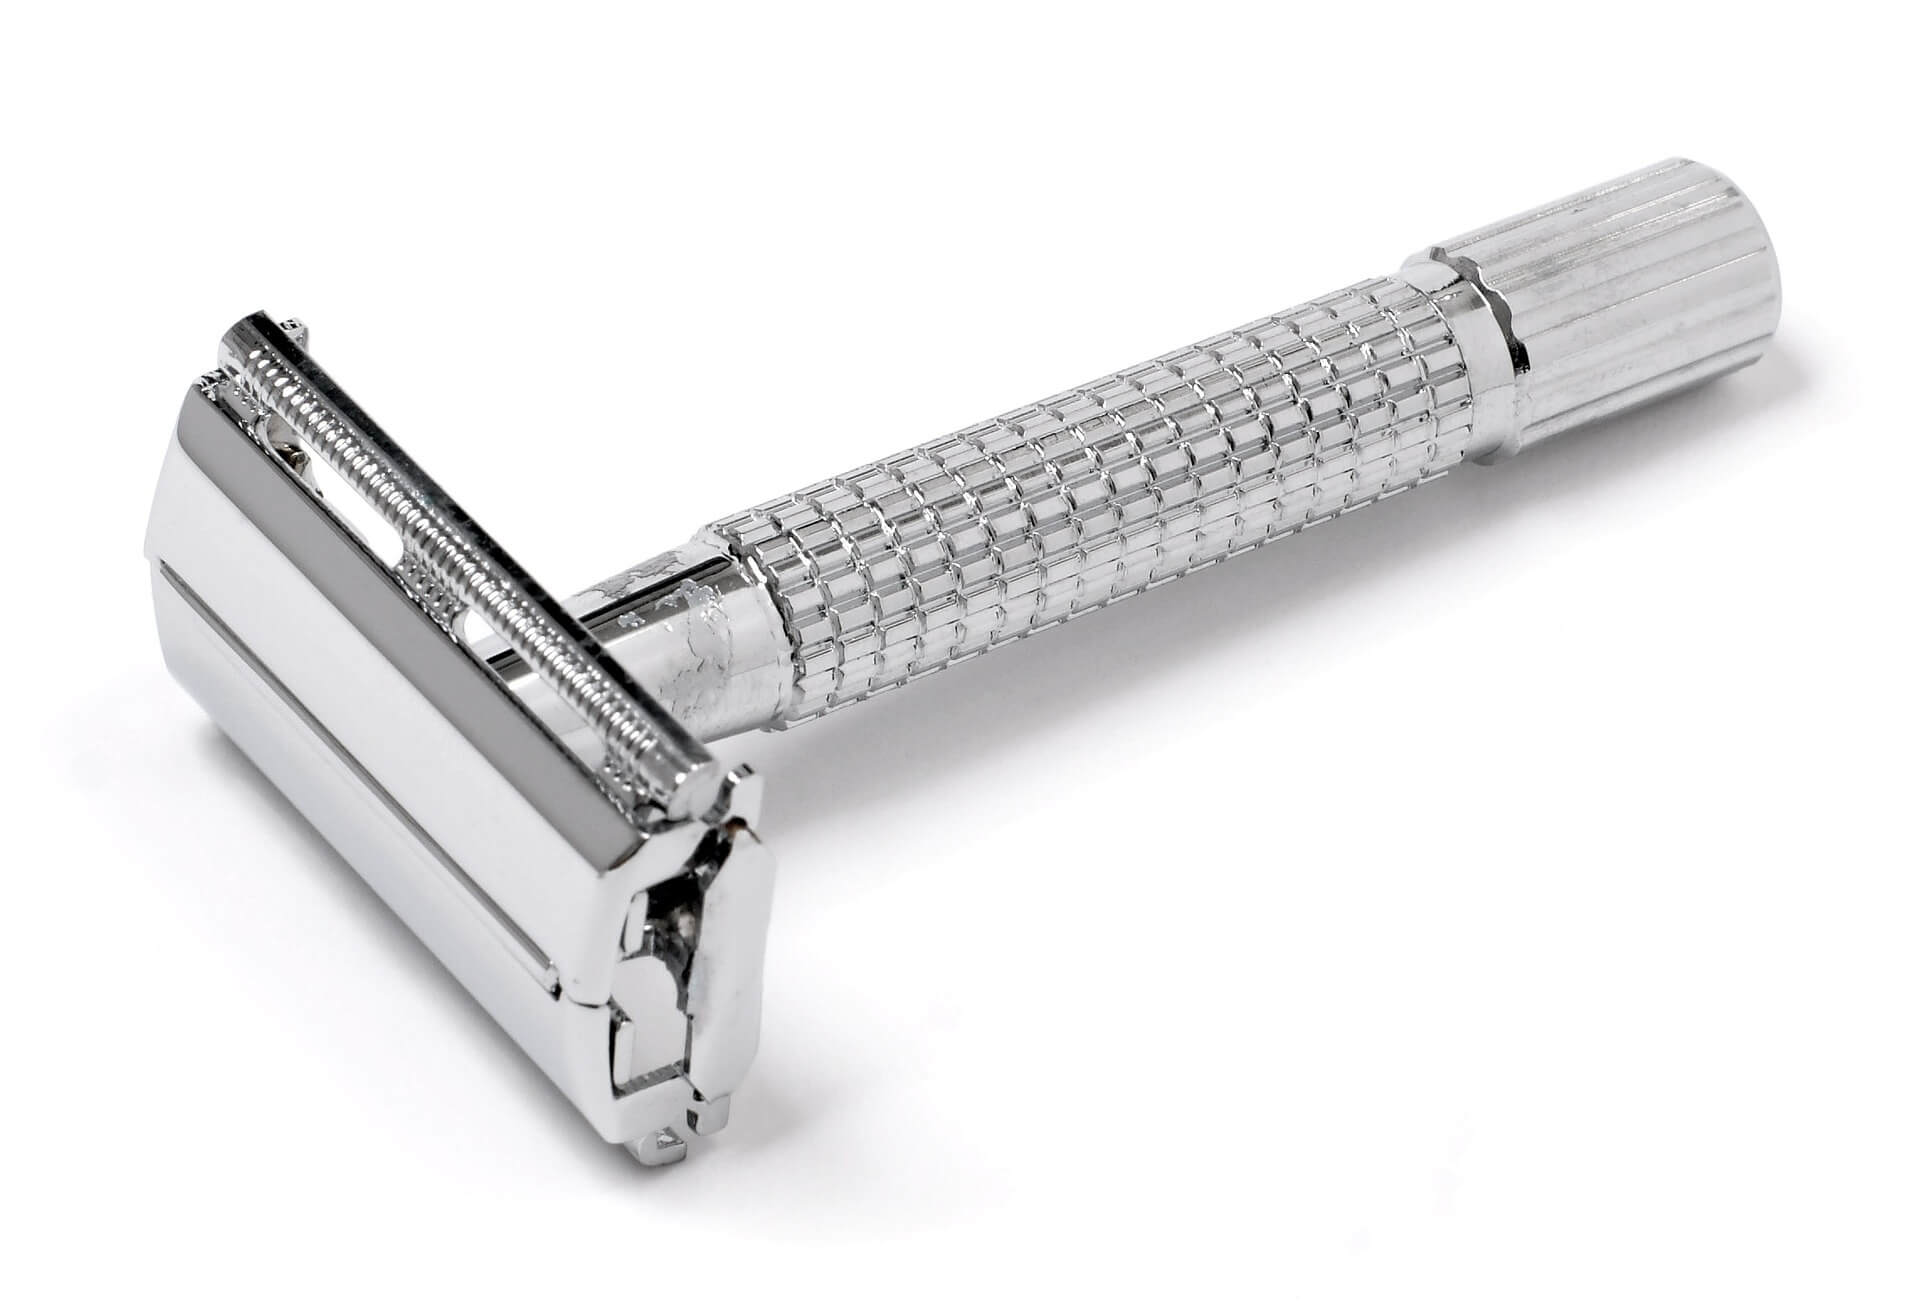 oneblade razor review